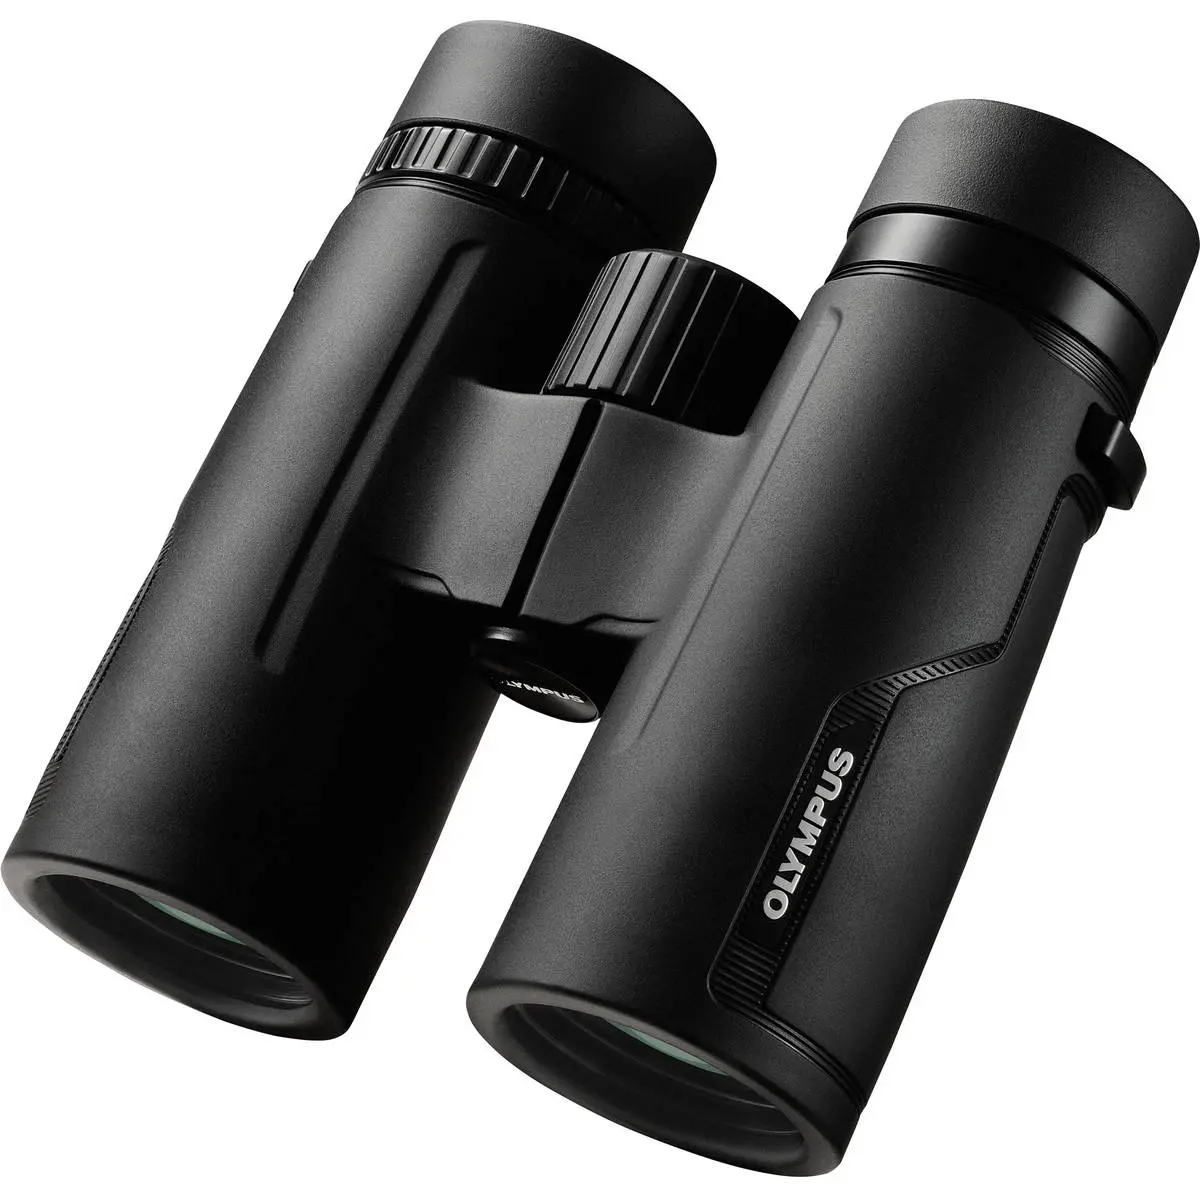 3. Olympus 8 X 42 PRO Binocular